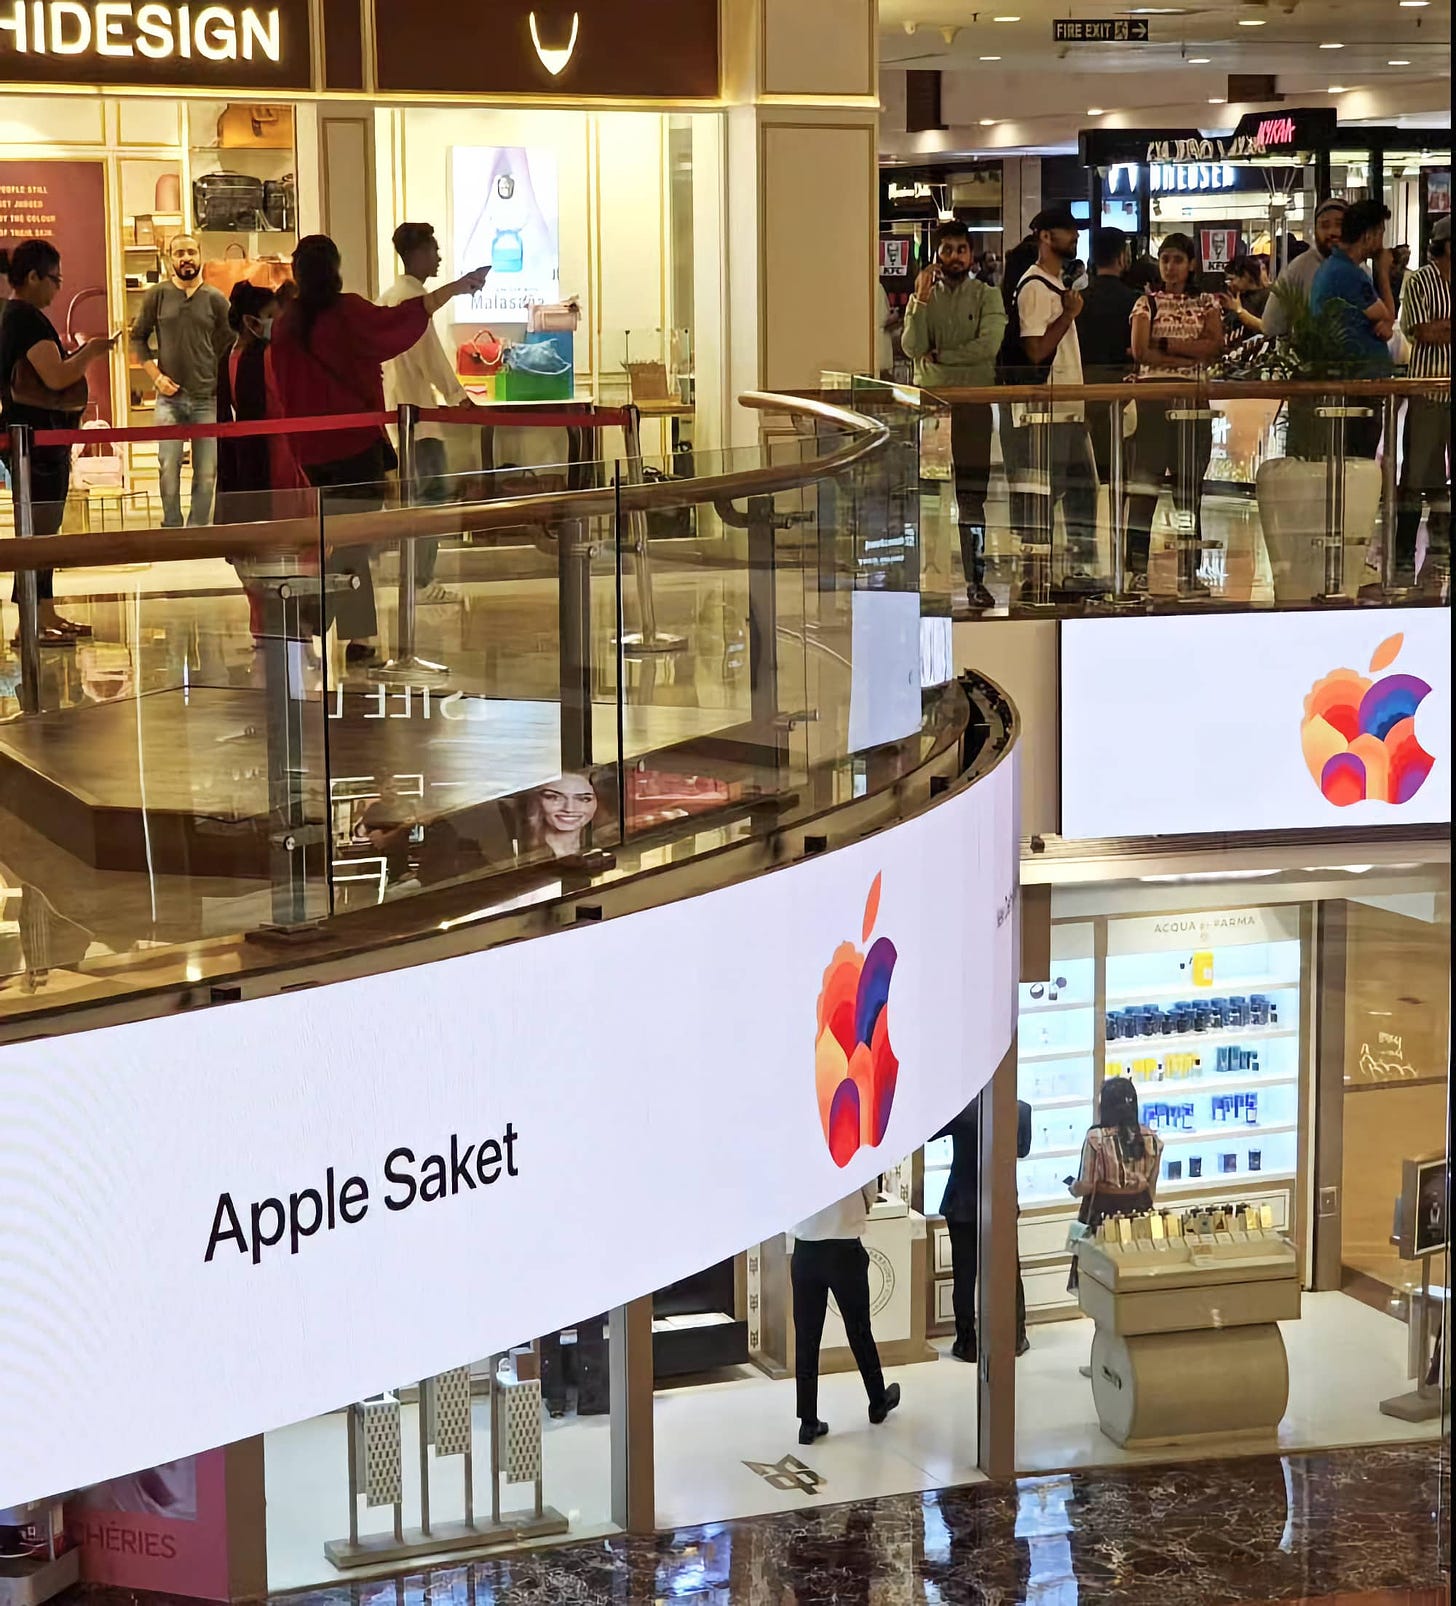 Digital signage celebrating Apple Saket at Select Citywalk.